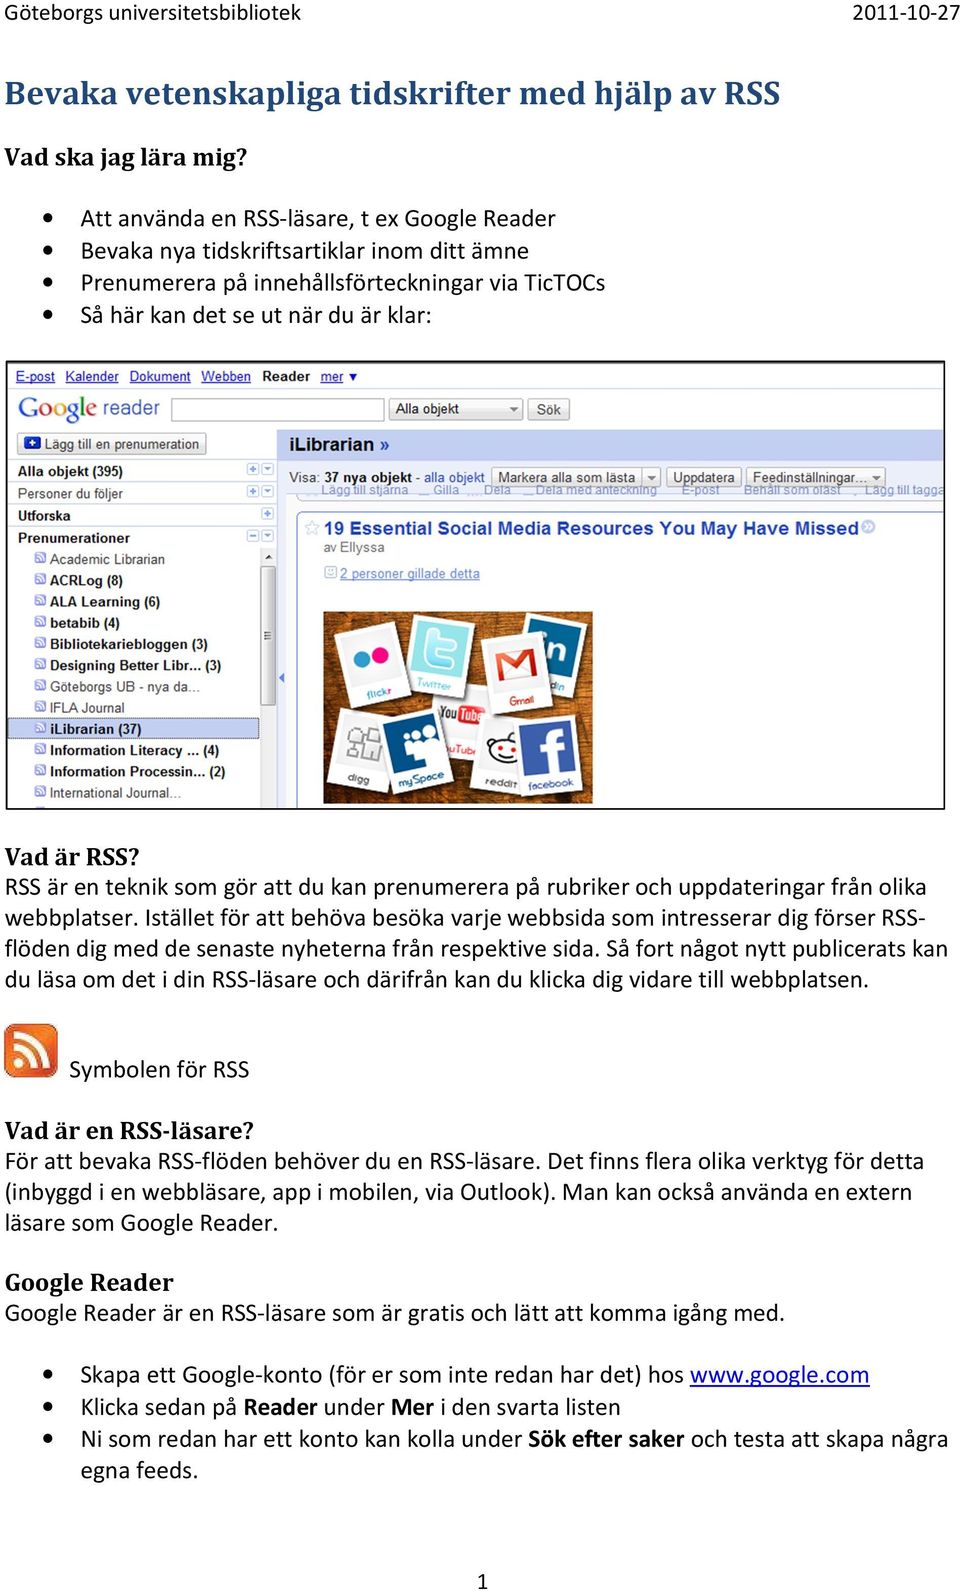 RSS är en teknik som gör att du kan prenumerera på rubriker och uppdateringar från olika webbplatser.